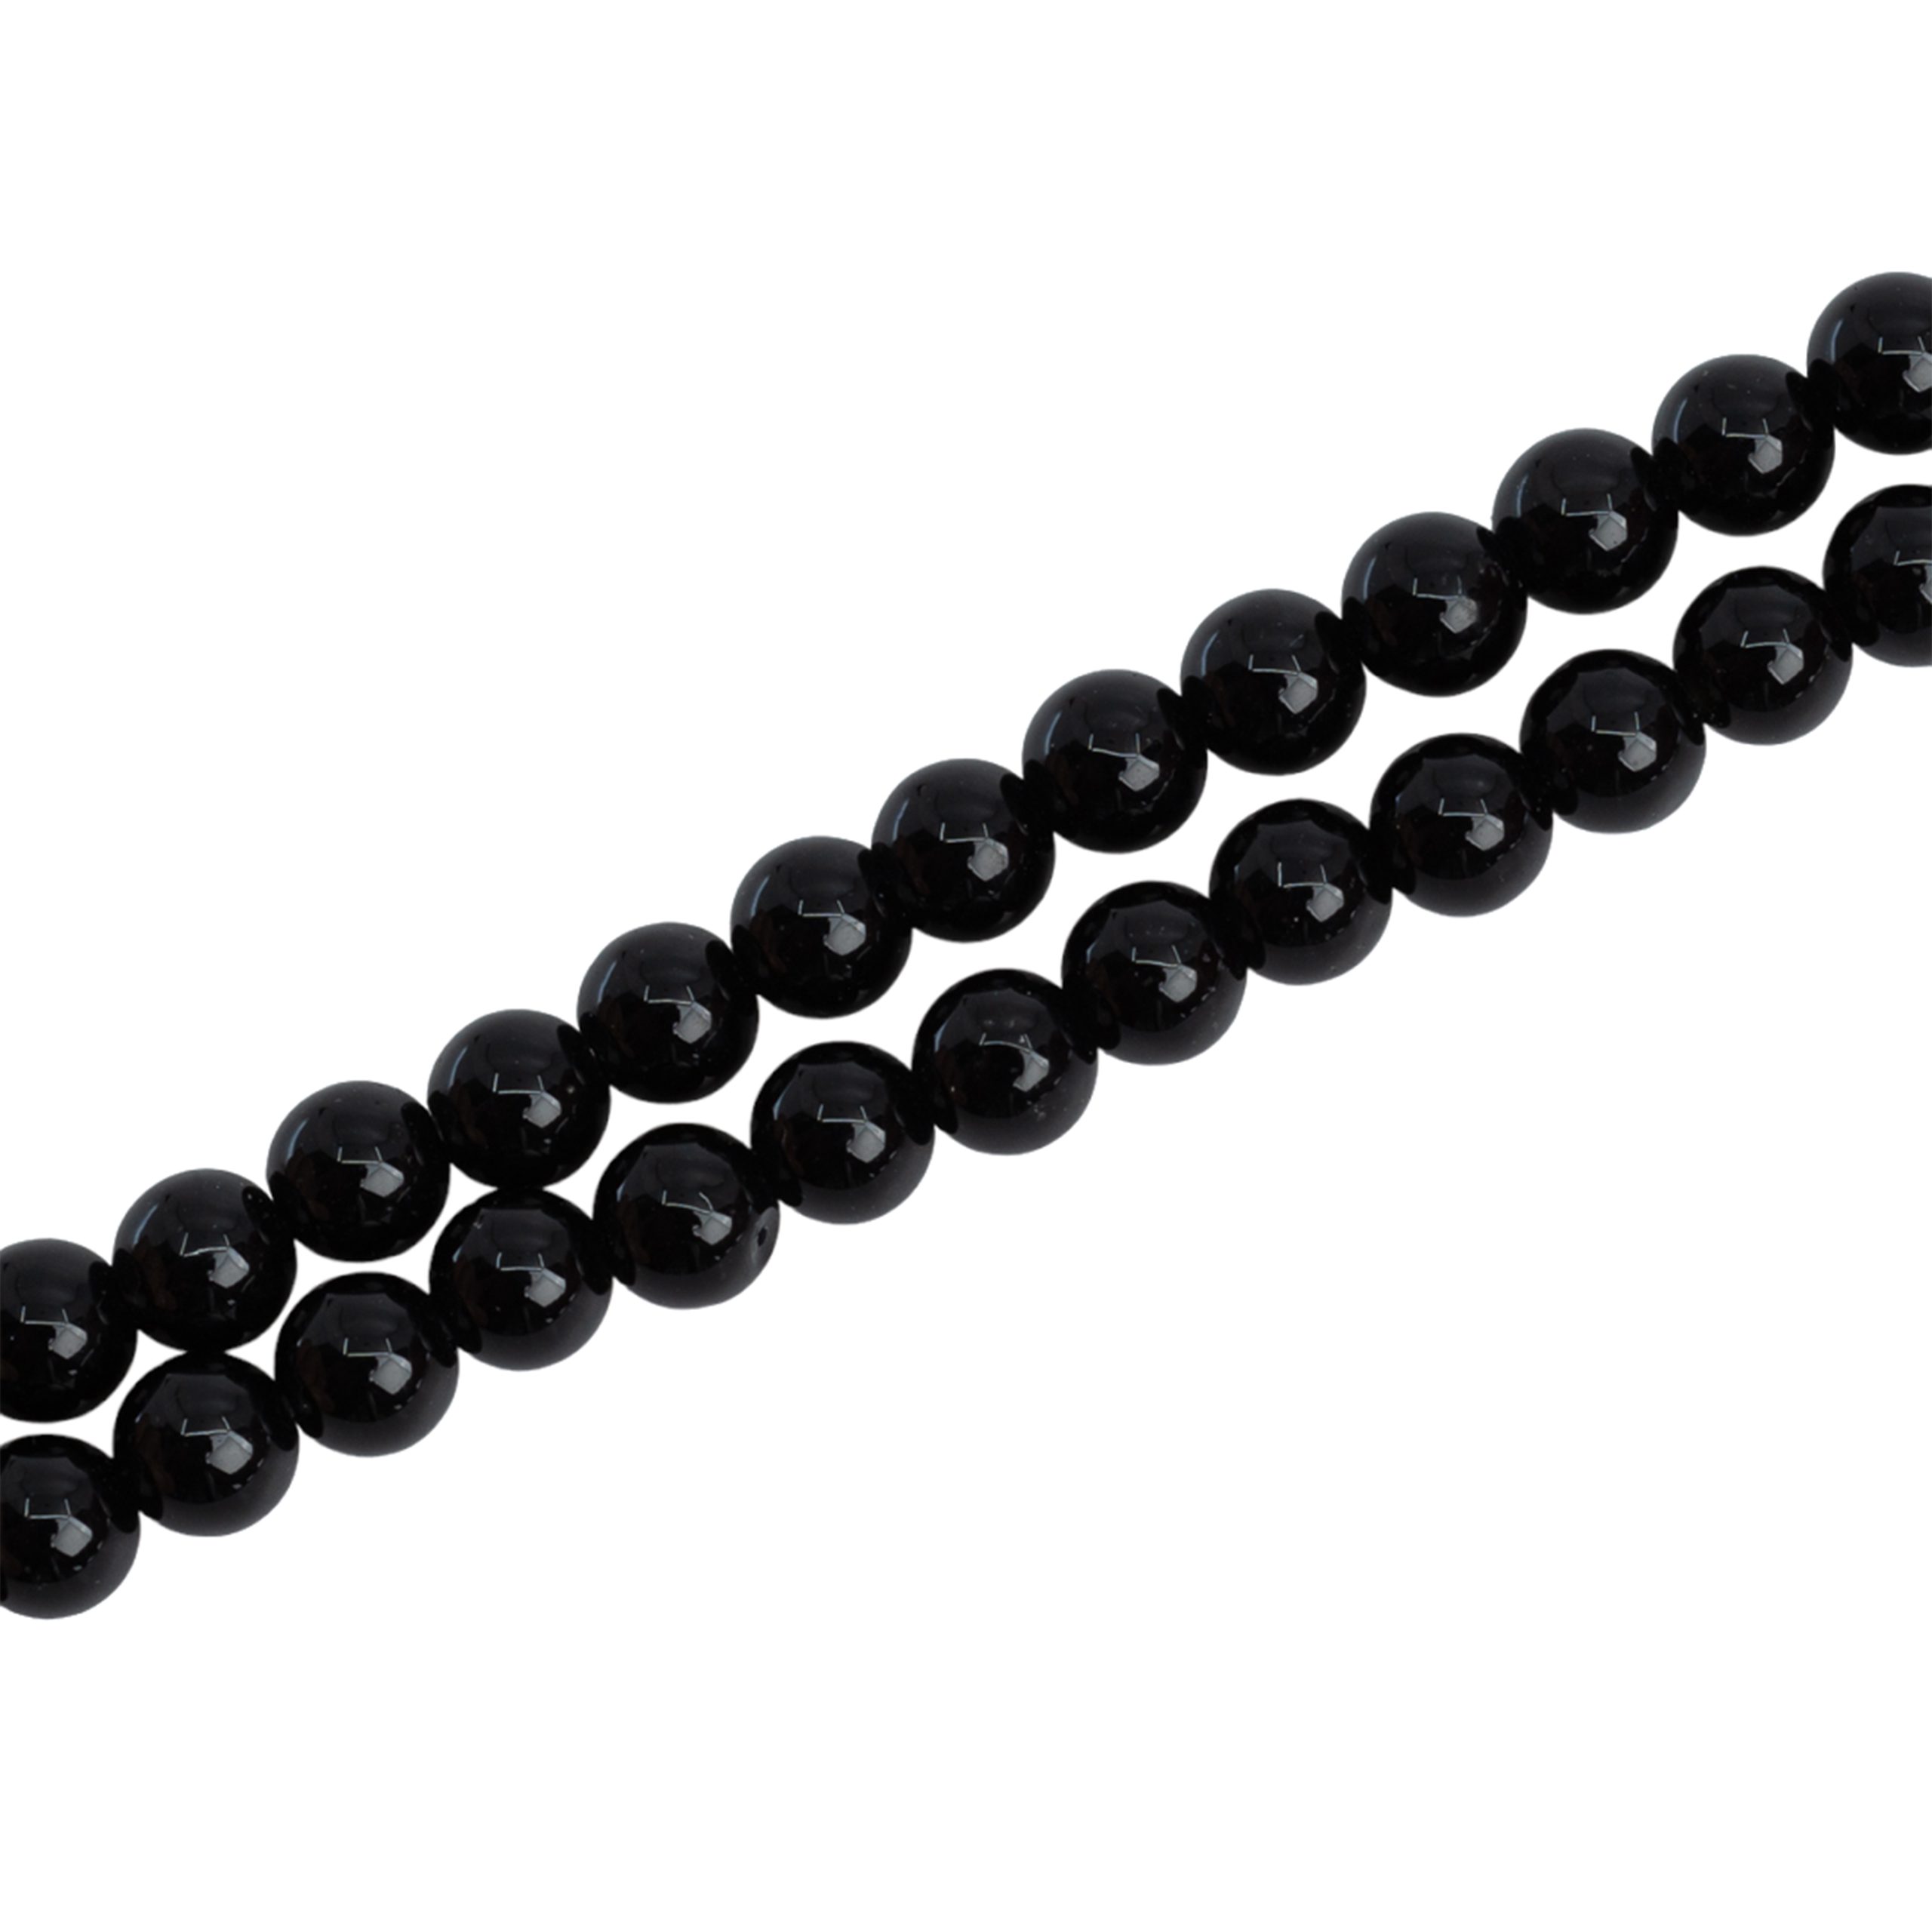 Perles de la Pierre Précieuse Onyx Noir (4 mm)